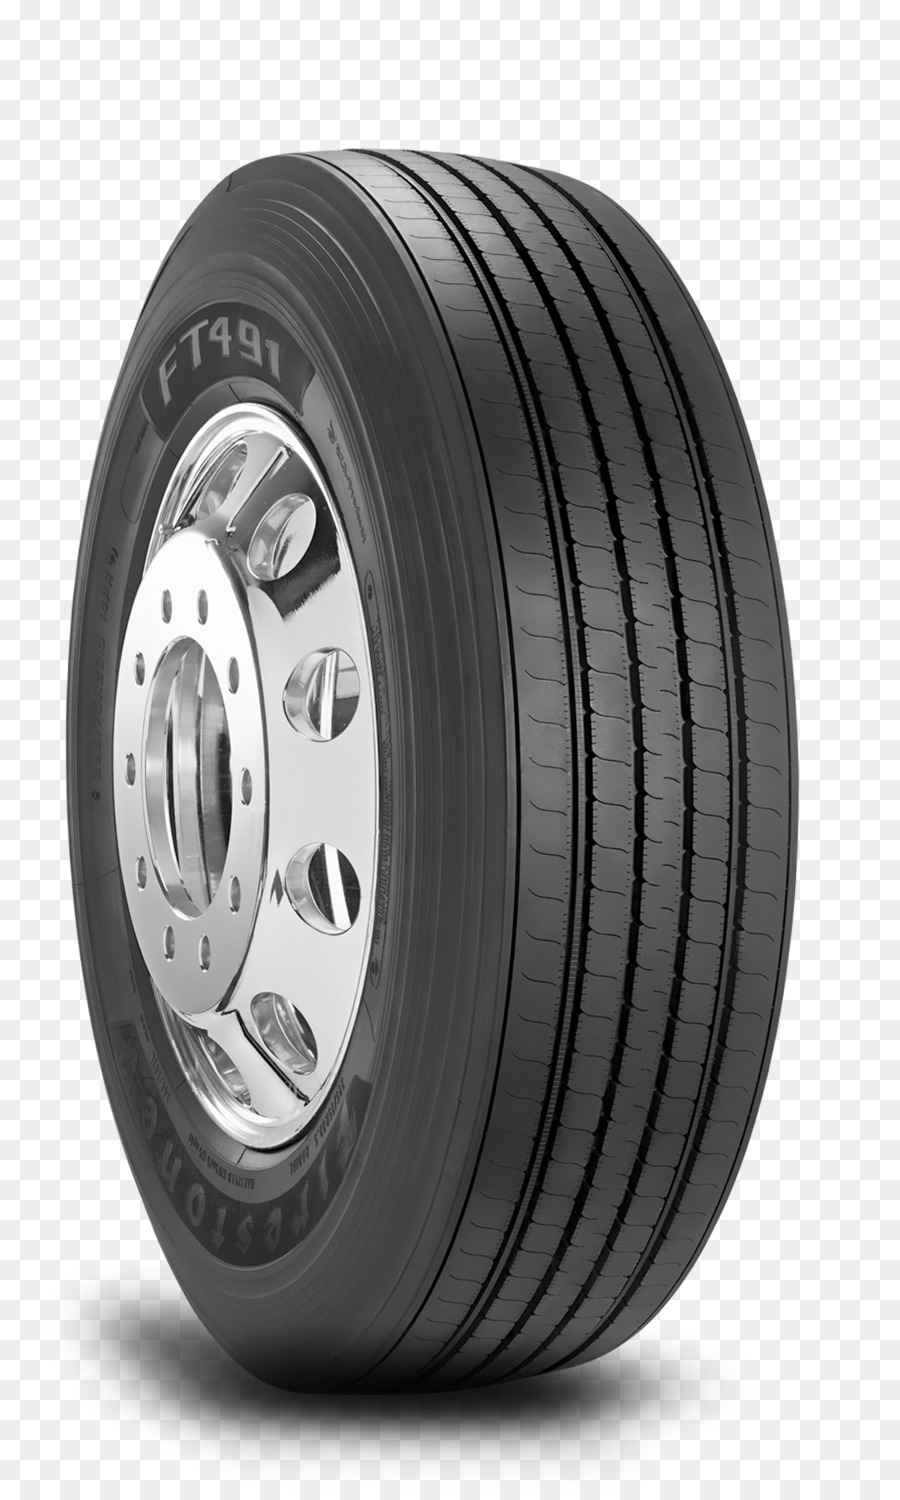 Auto Firestone Tire and Rubber Company, Bridgestone Preis - Auto